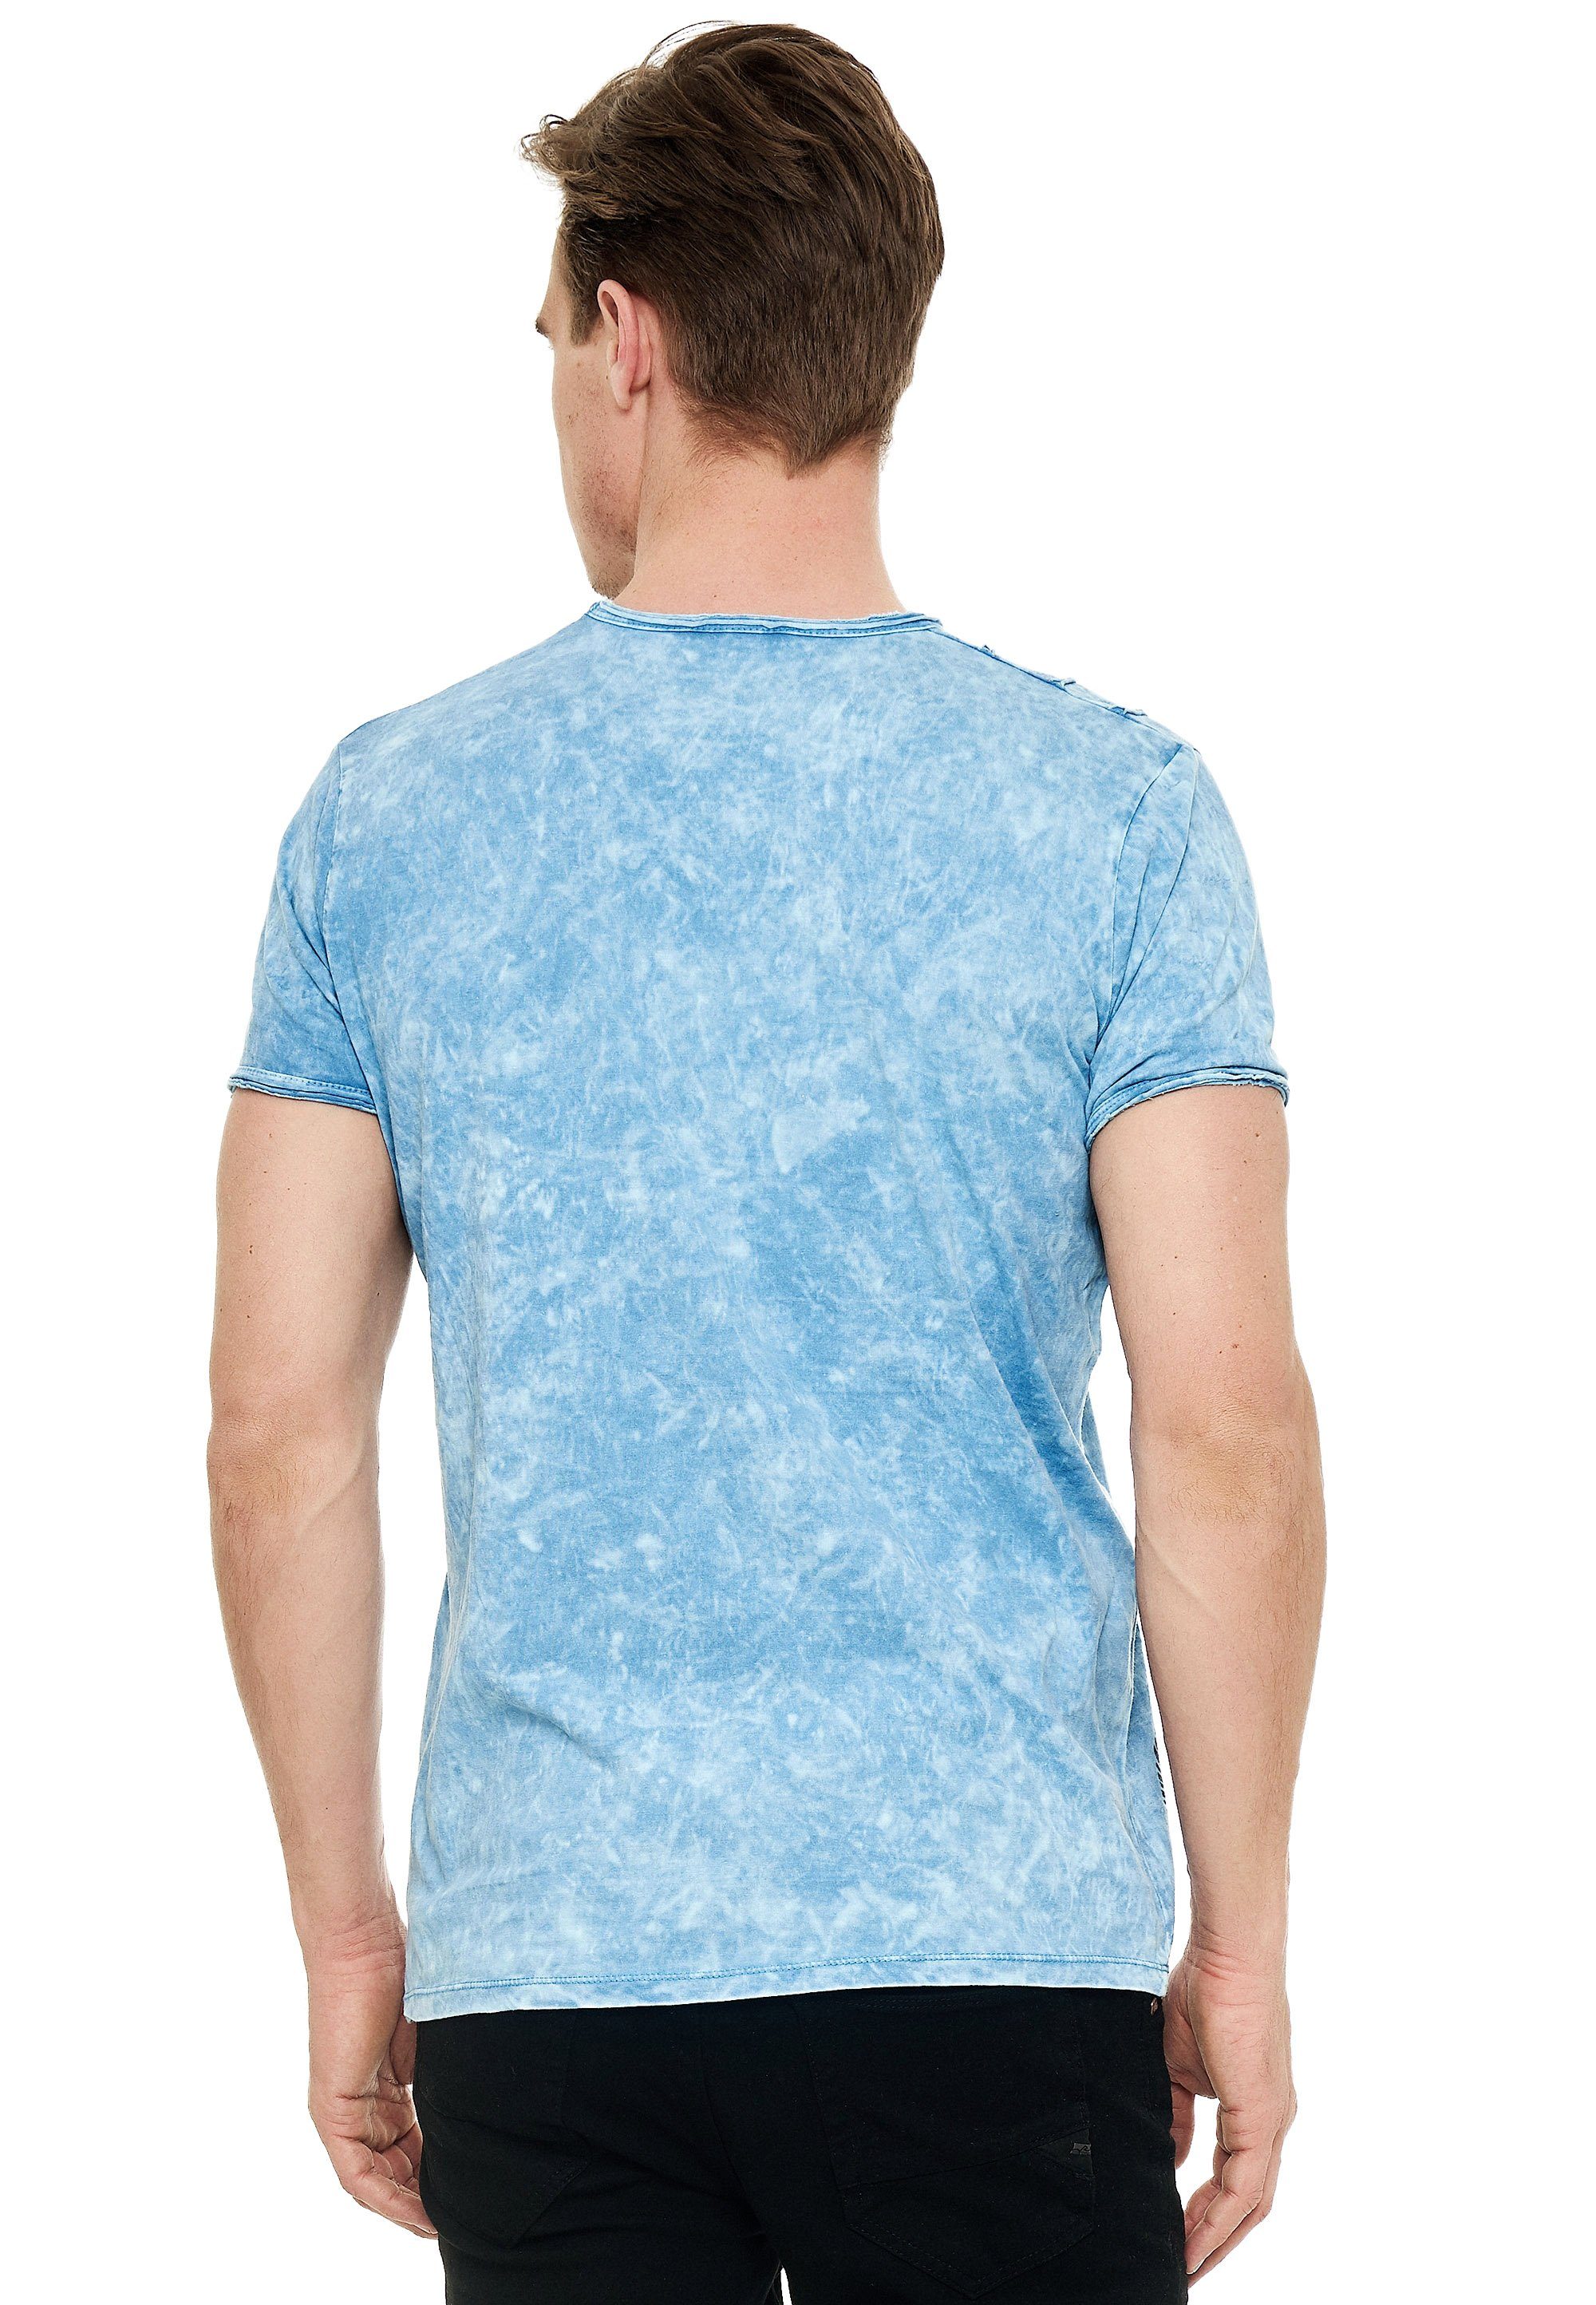 Rusty Neal T-Shirt mit eindrucksvollem Print hellblau